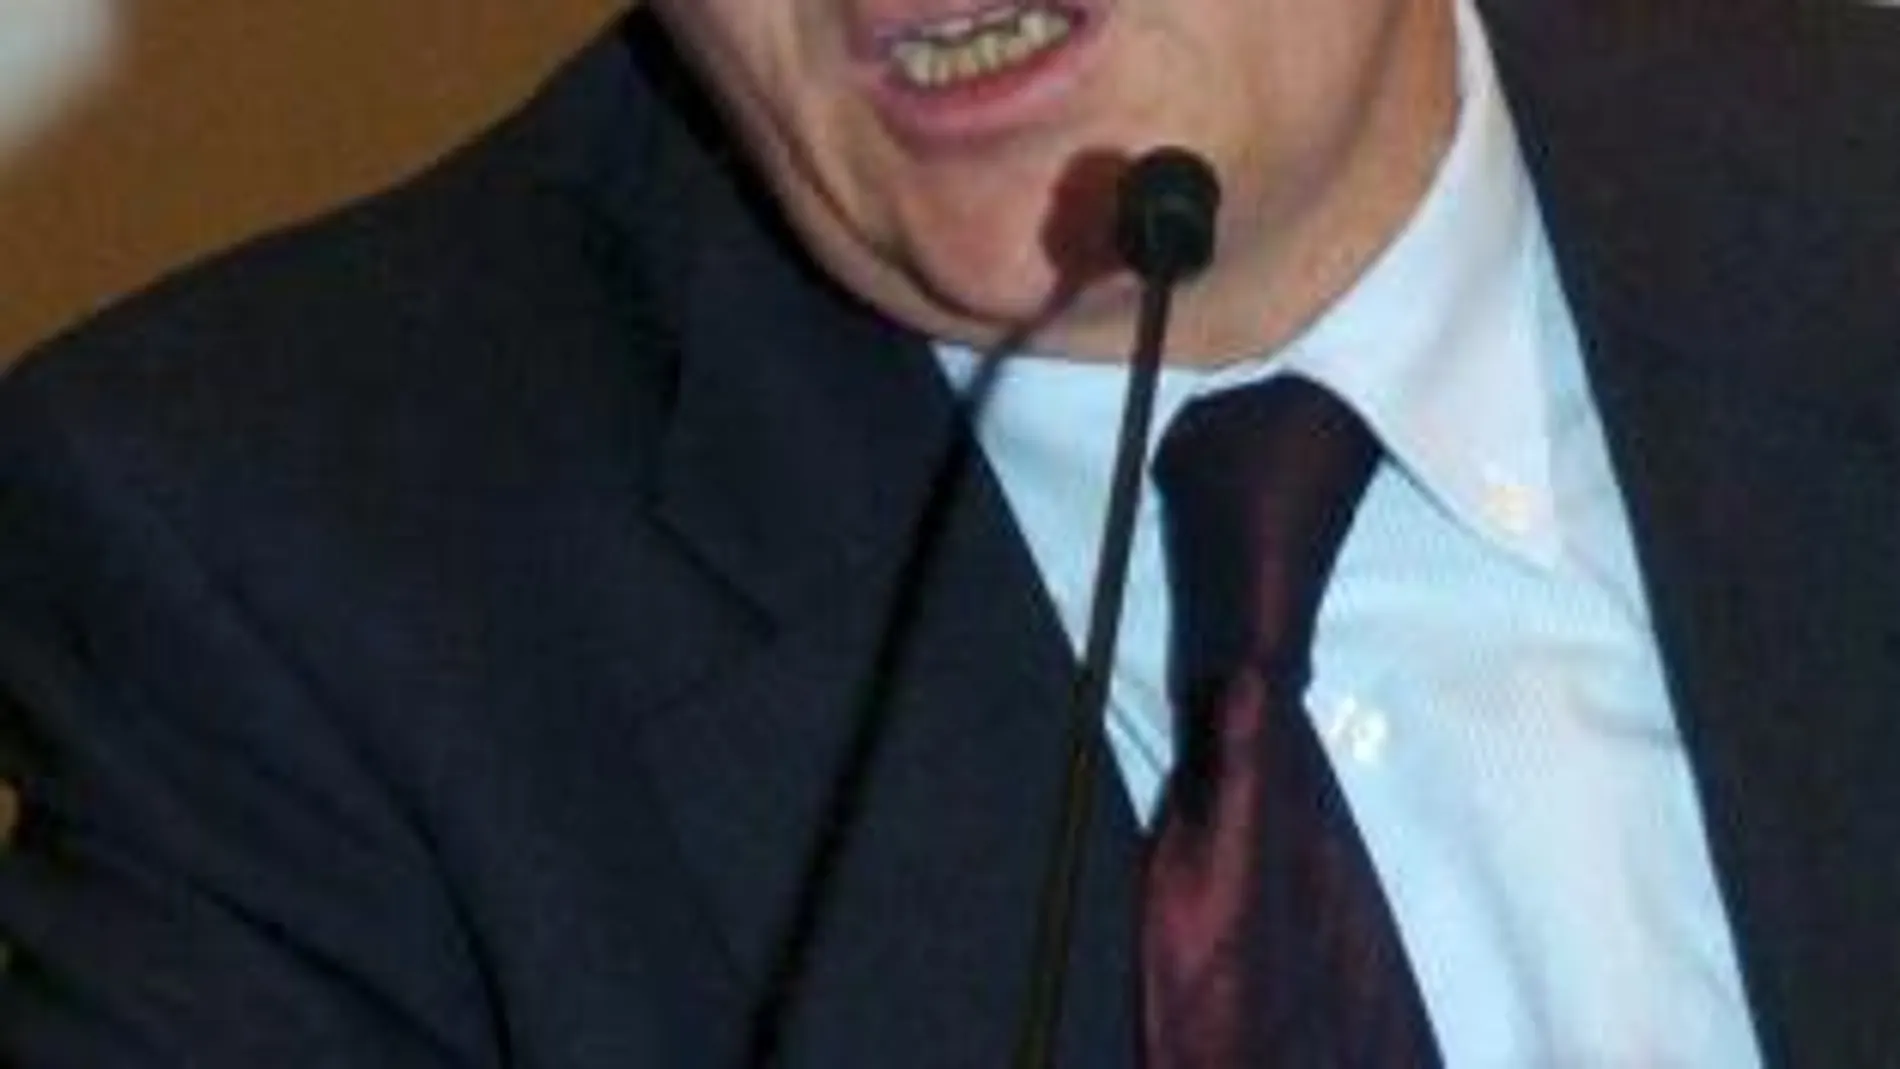 Fotografía de archivo tomada el 05/10/2006 en Fráncfort (Alemania), del ex conseller de Cultura en el último gobierno de Pasqual Maragall, Ferrán Mascarell, que ha aceptado la oferta de Artur Mas